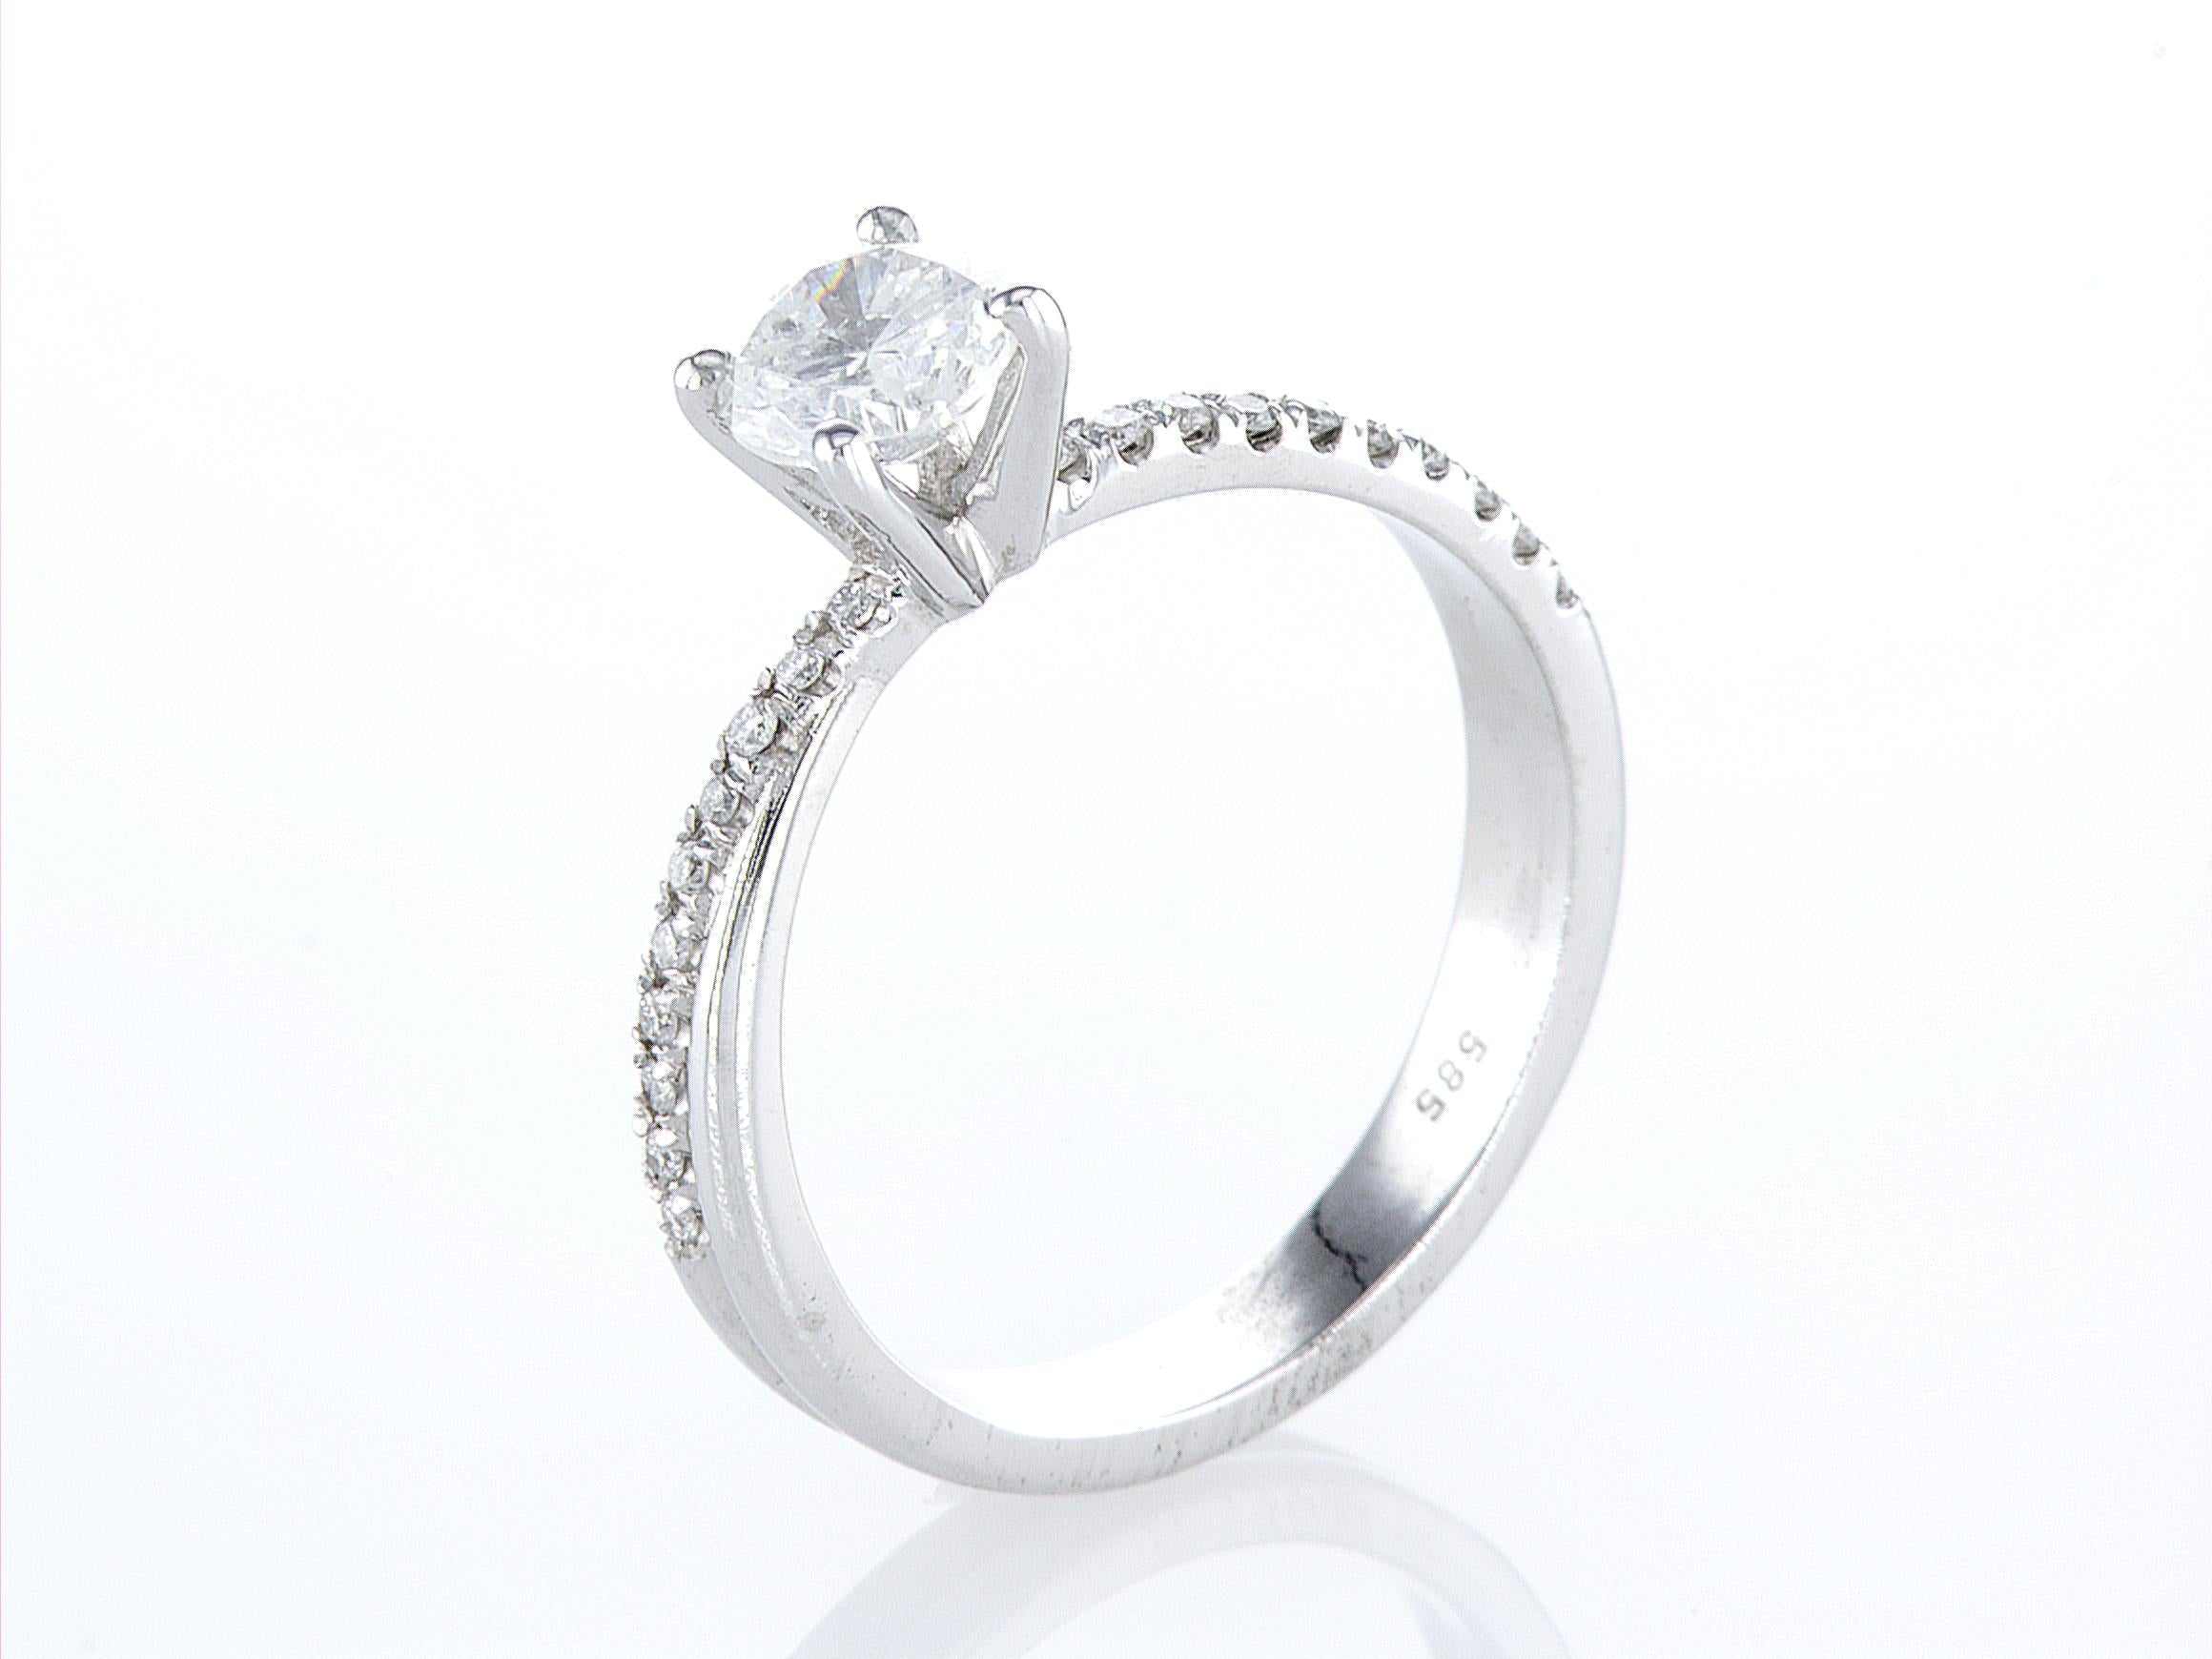 טבעת אירוסין שדה מרשימה, המכילה יהלום טבעי עגול מרכזי במשקל 0.5 קראט, ו-16 יהלומים טבעיים צדדיים במשקל 0.16 קראט. הטבעת הזו משלבת את היוקרה והברק של טבעת יהלומים עם האלגנטיות הנצחית, ומציעה יופי ואופנה שמתאימים לאירוע של פעם בחיים.